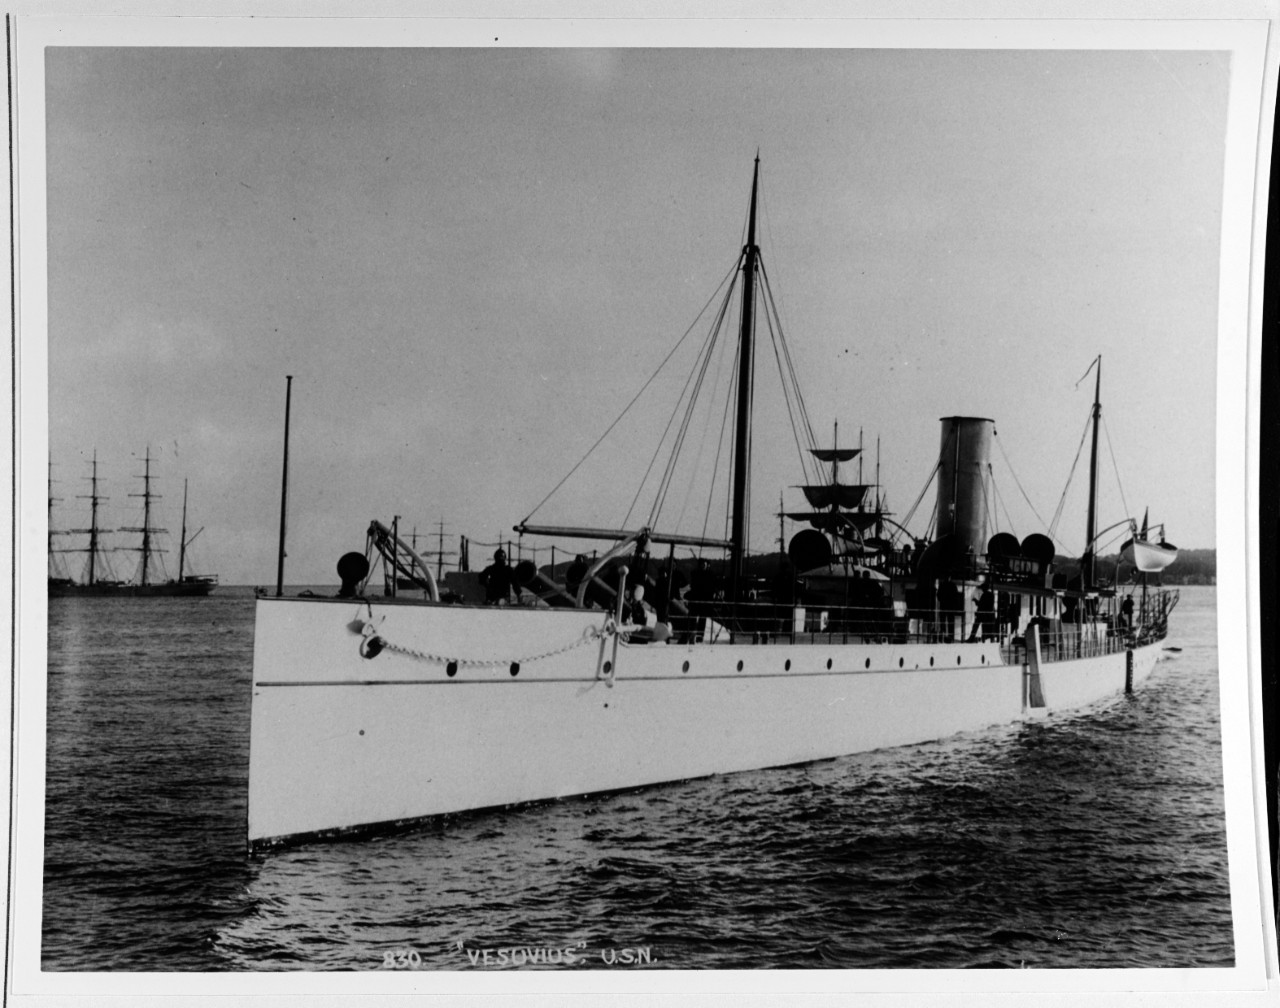 USS VESUVIUS (1890-1922)